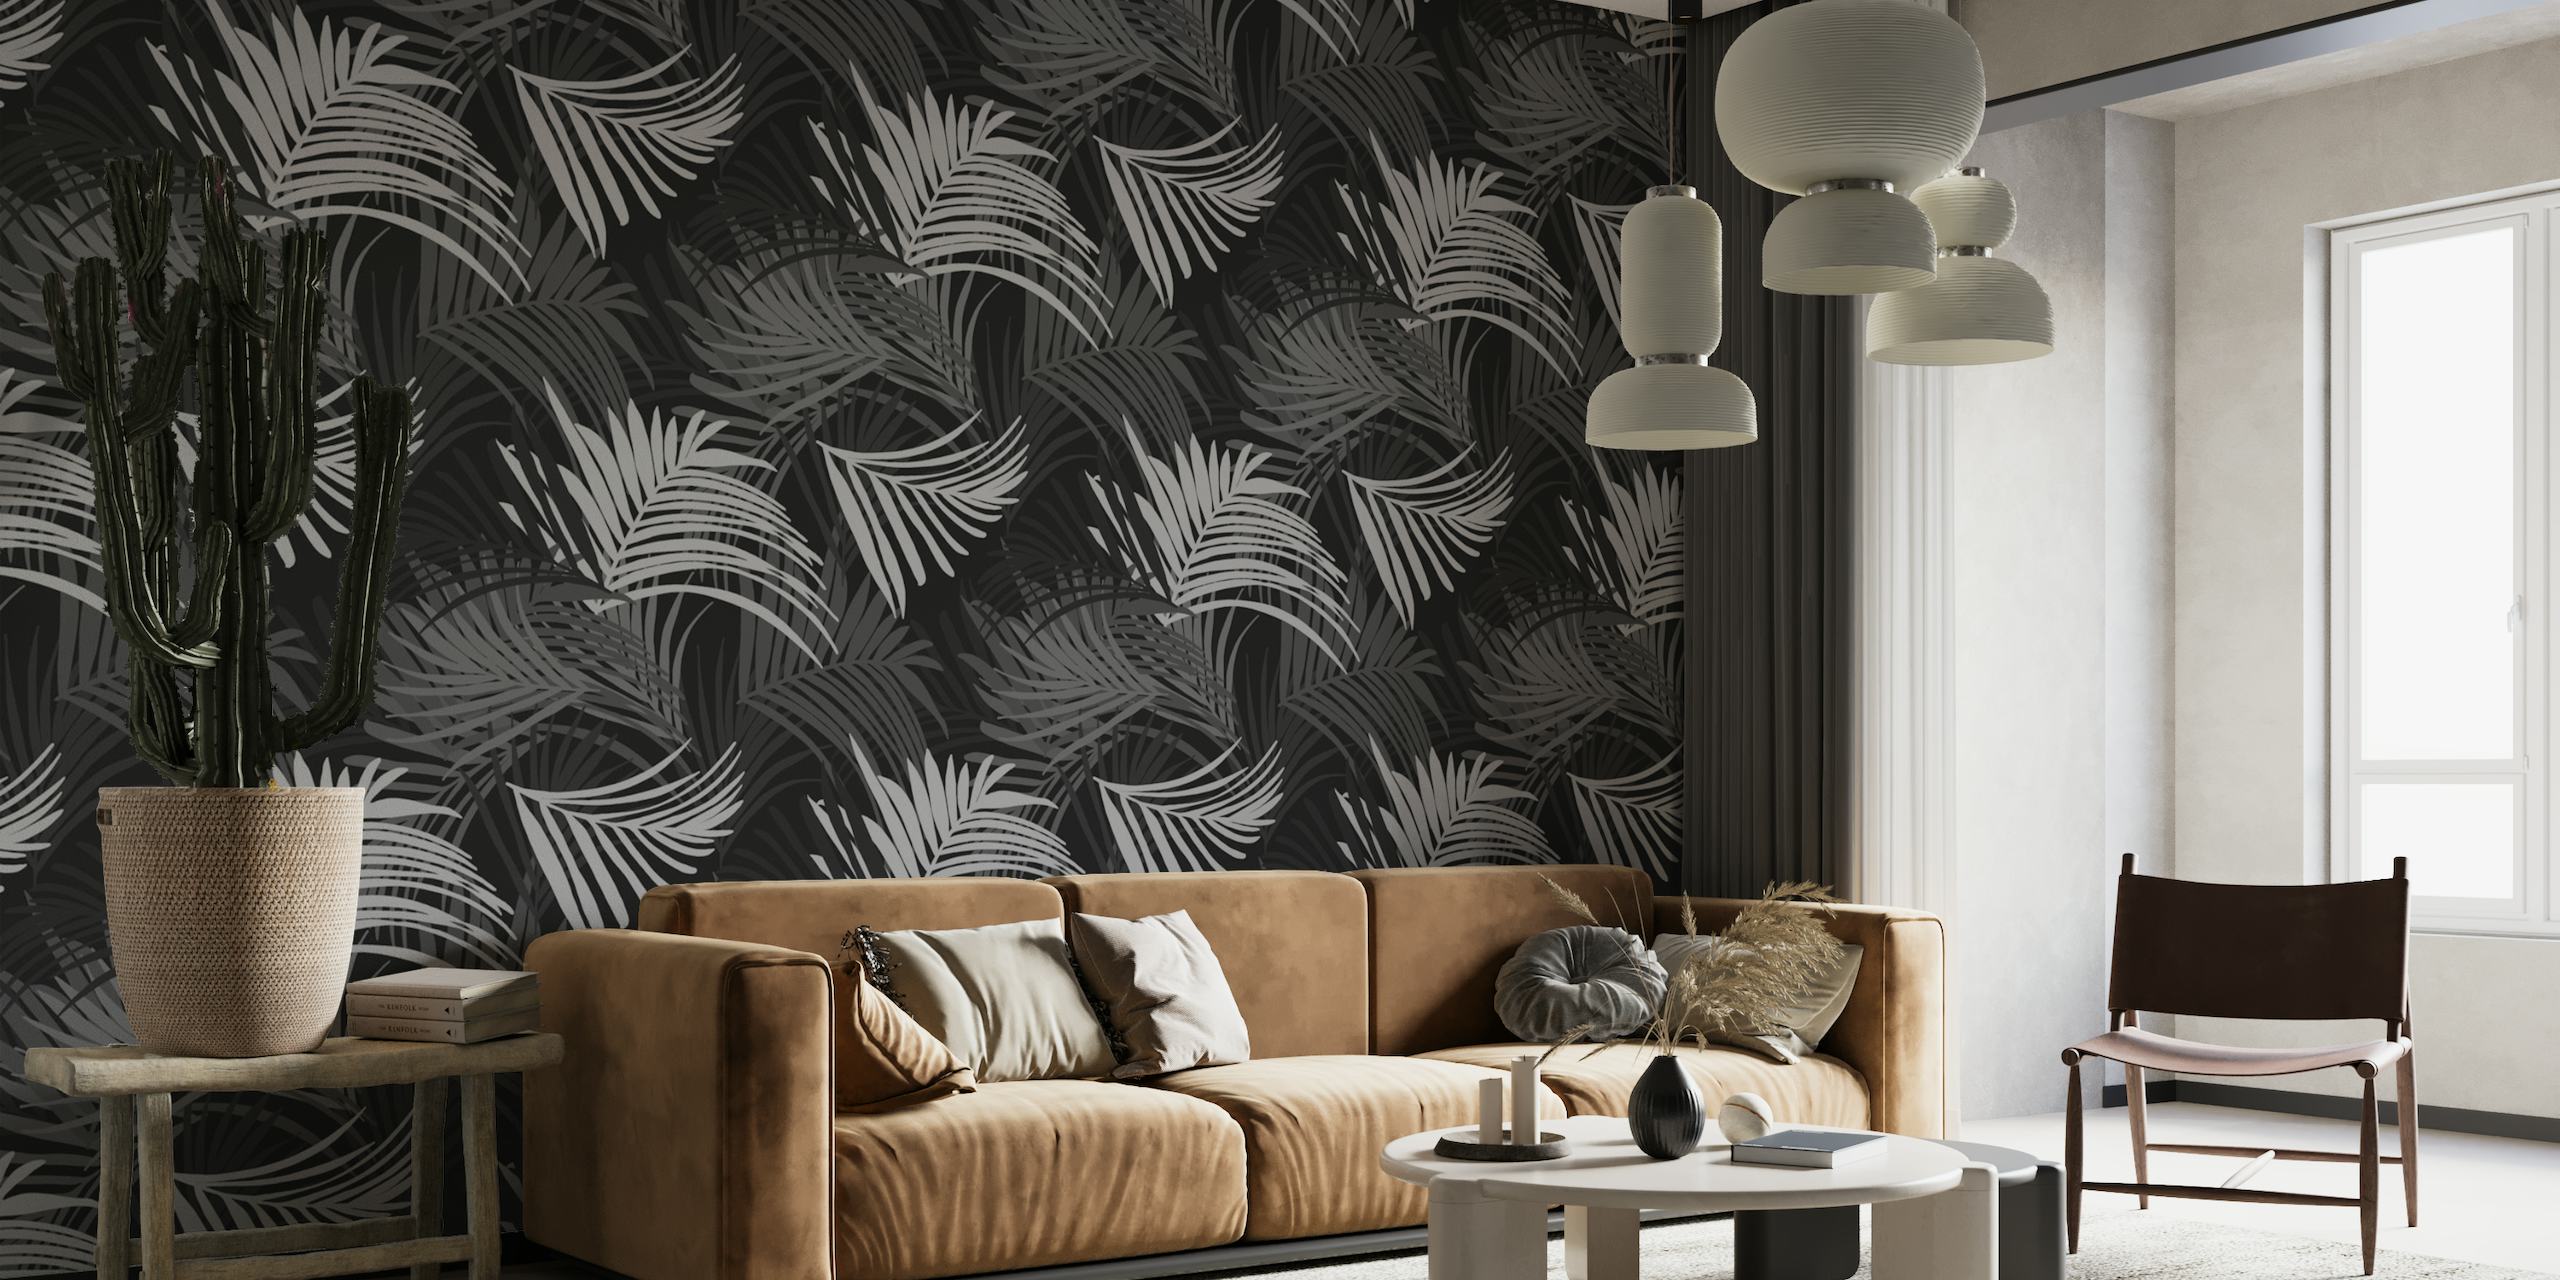 Sort og hvidt tropisk palmebladsmønster vægmaleri, perfekt til at skabe et fredfyldt jungletema.